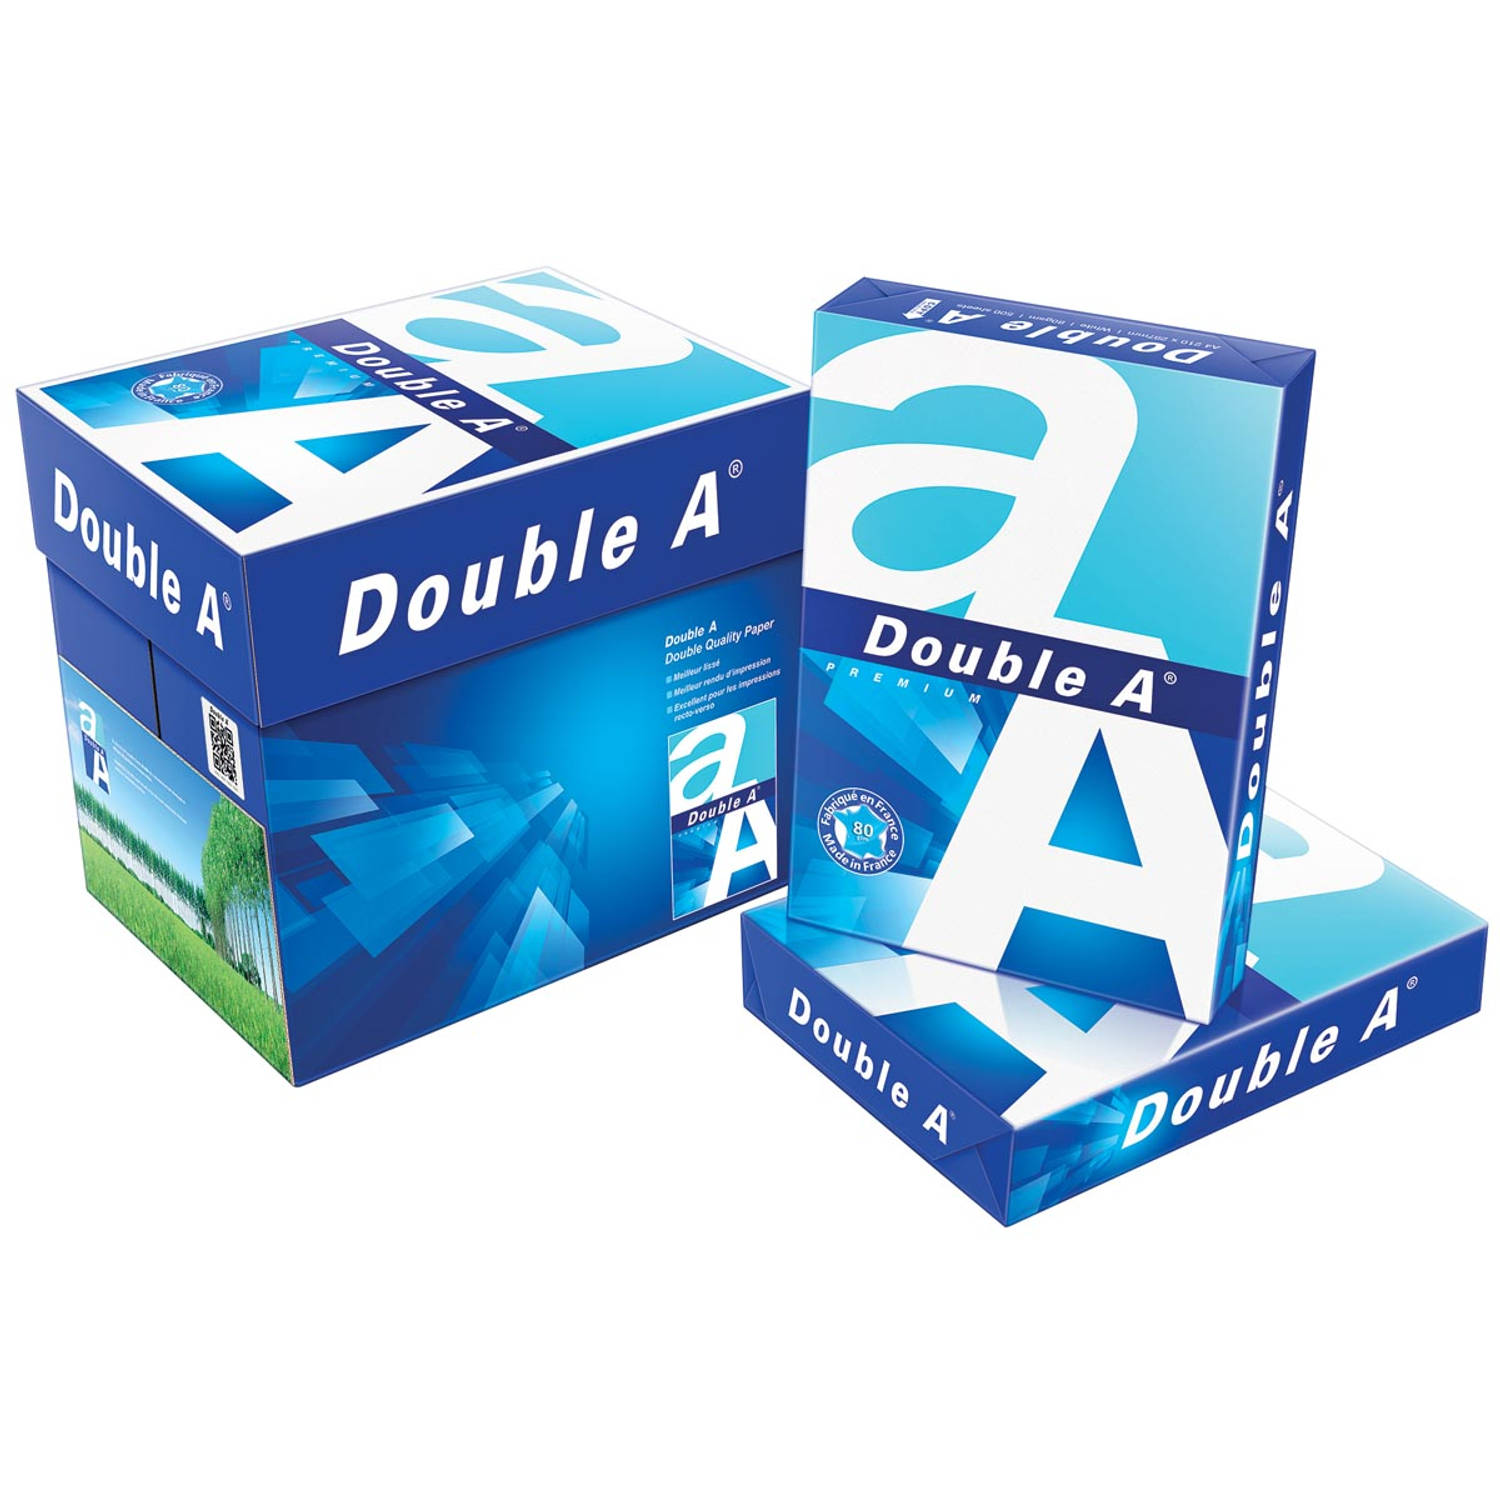 Double A Premium printpapier ft A4, 80 g, pak van 500 vel 5 stuks